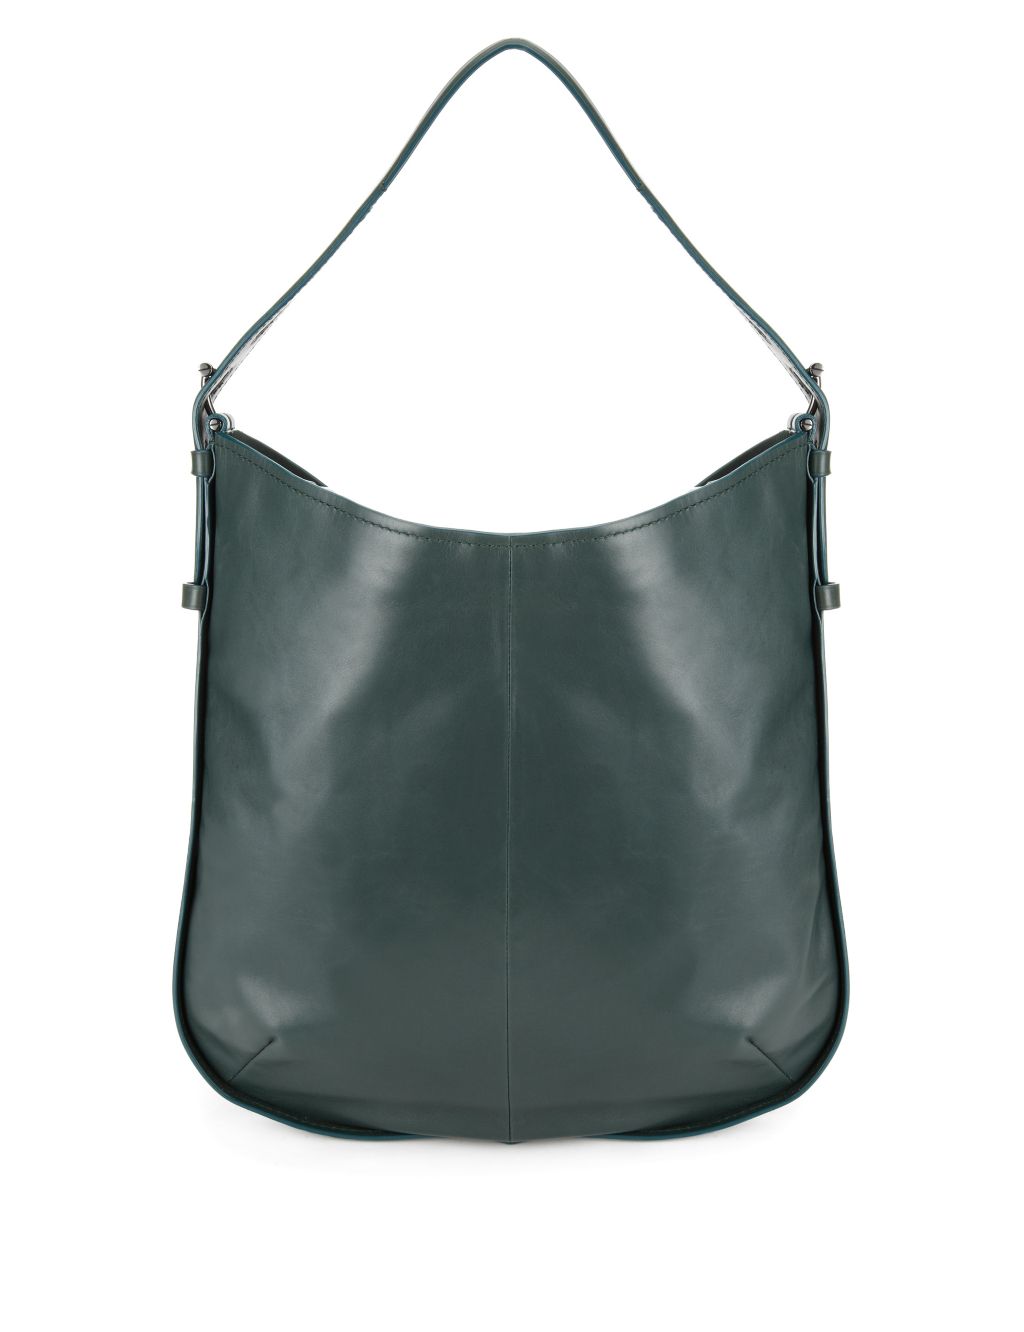 Leather Hobo Bag 1 of 2